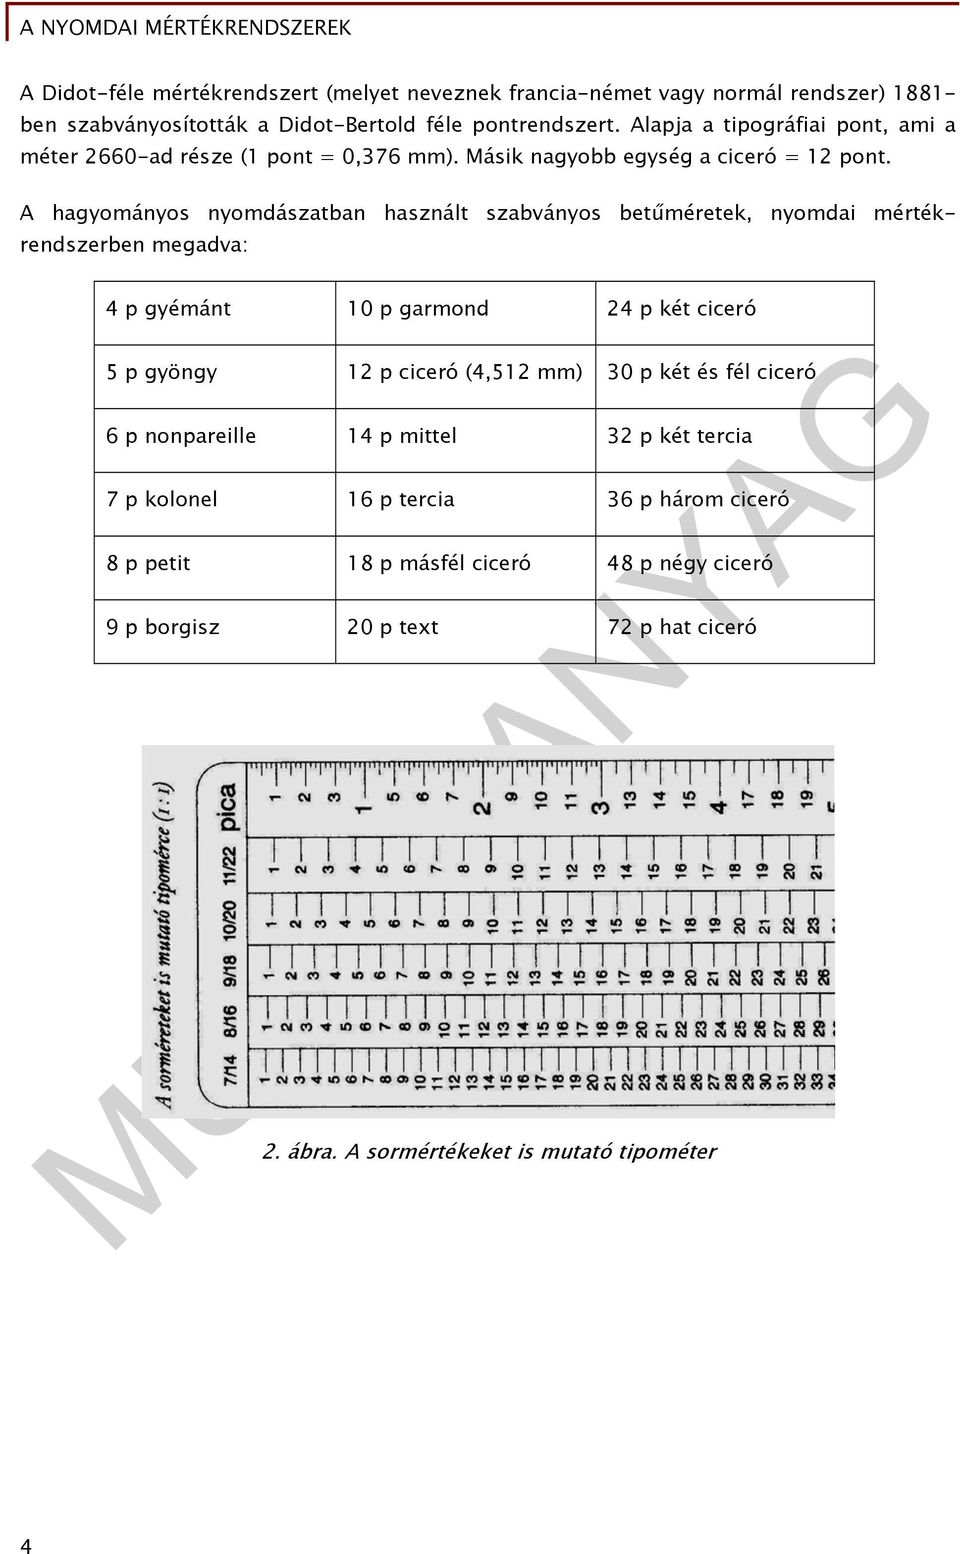 A hagyományos nyomdászatban használt szabványos betűméretek, nyomdai mértékrendszerben megadva: 4 p gyémánt 10 p garmond 24 p két ciceró 5 p gyöngy 12 p ciceró (4,512